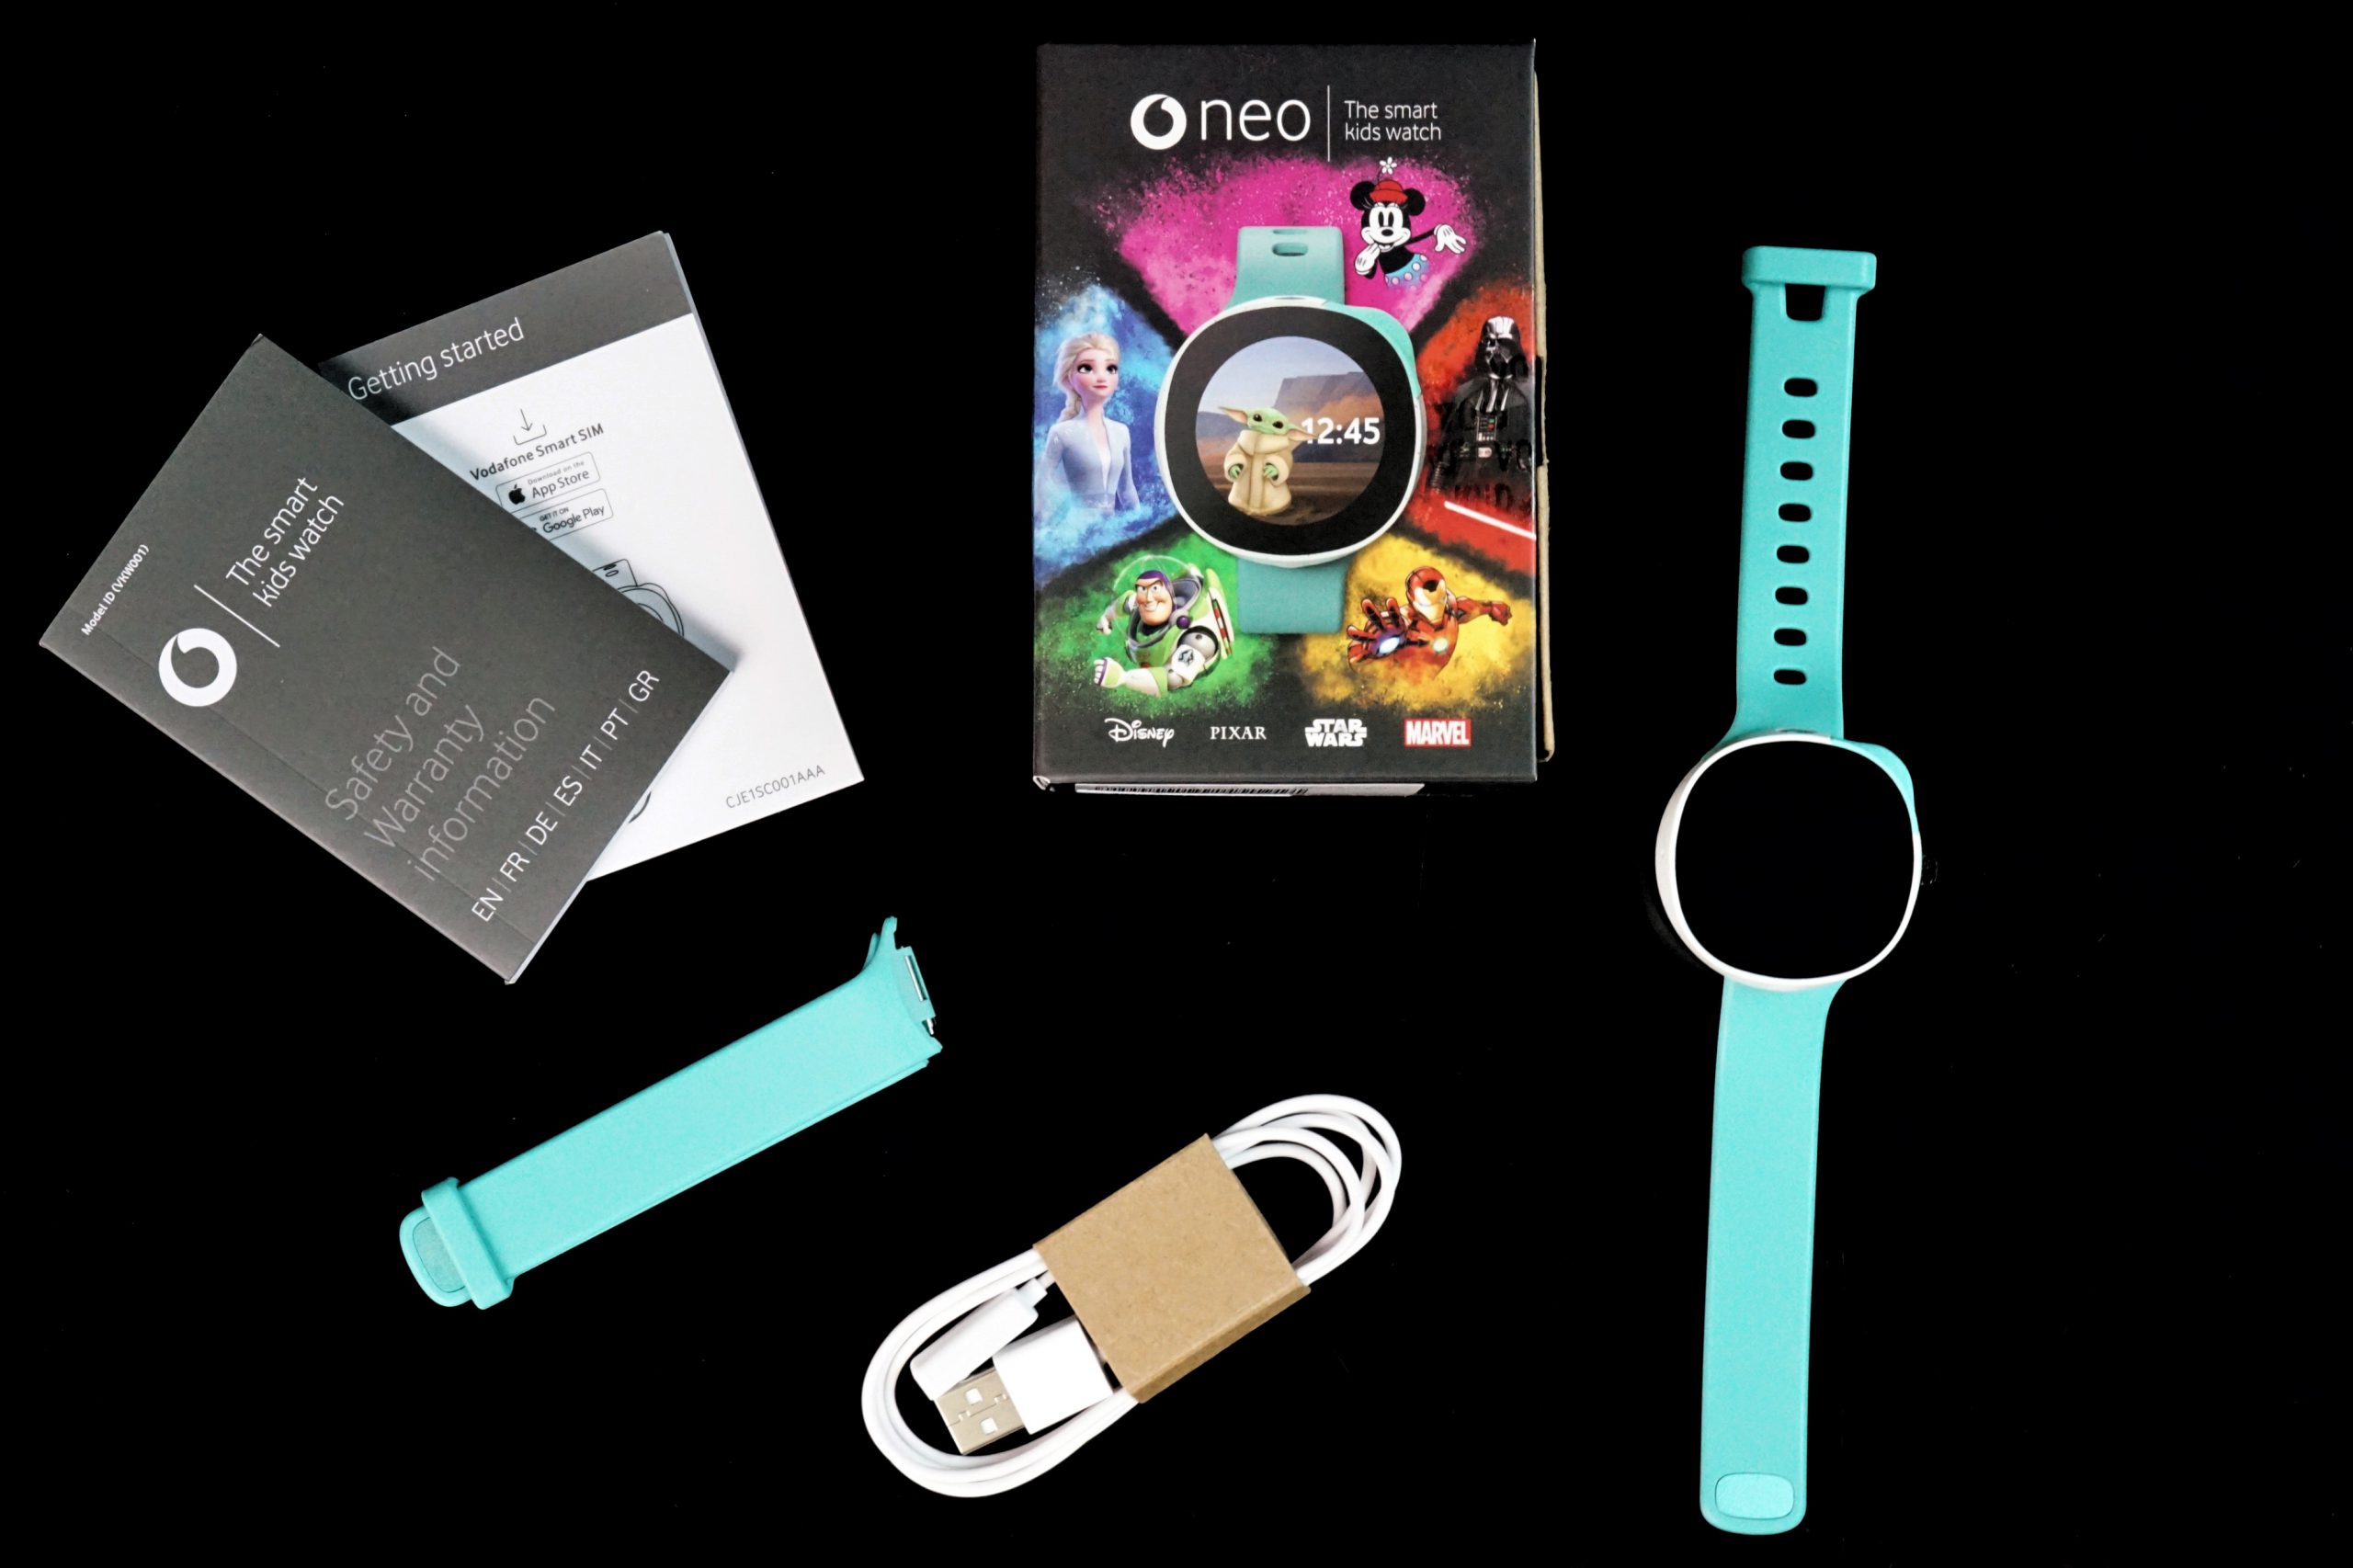 Im Lieferumfang sind die Neo Smartwatch, ein zusätzliches Armband, das Ladegabel und eine Kurzanleitung dabei